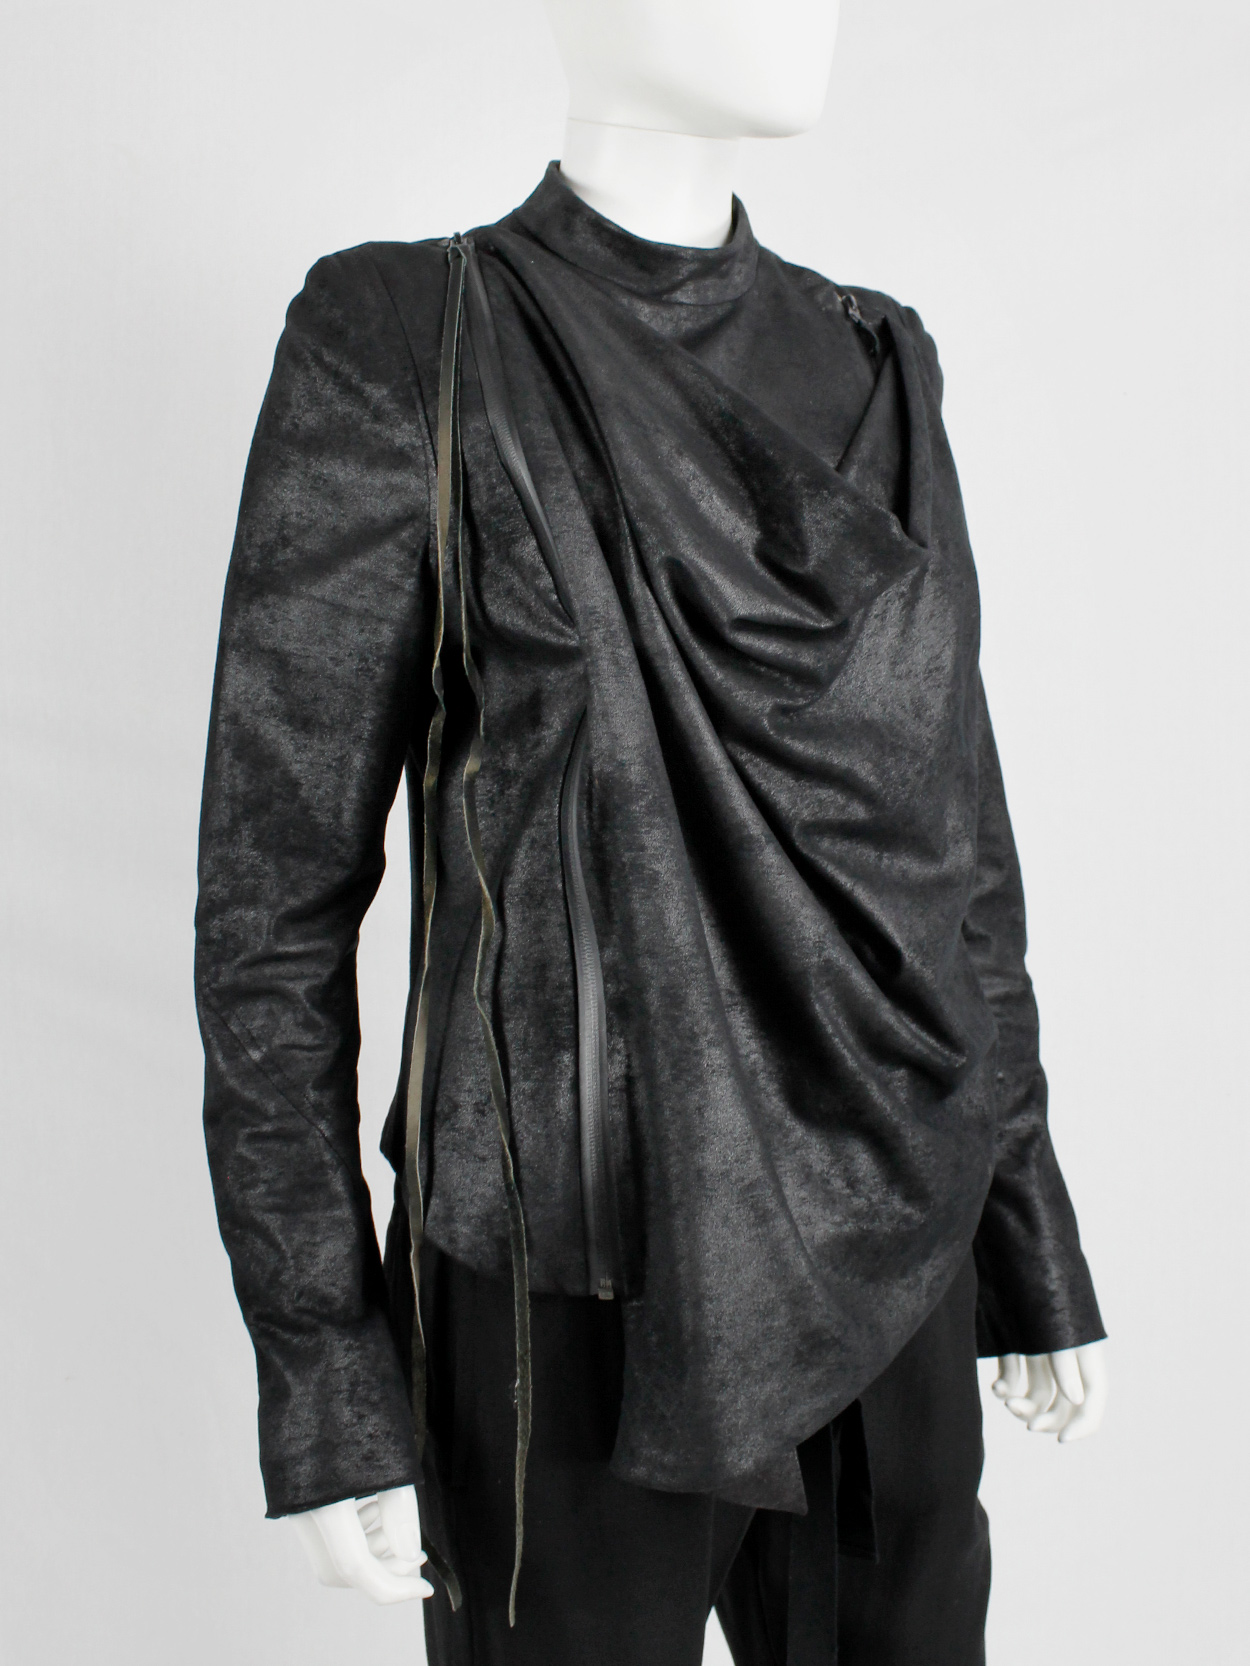 af Vandevorst black fencing jacket with front cowl drape fall 2010 (11)